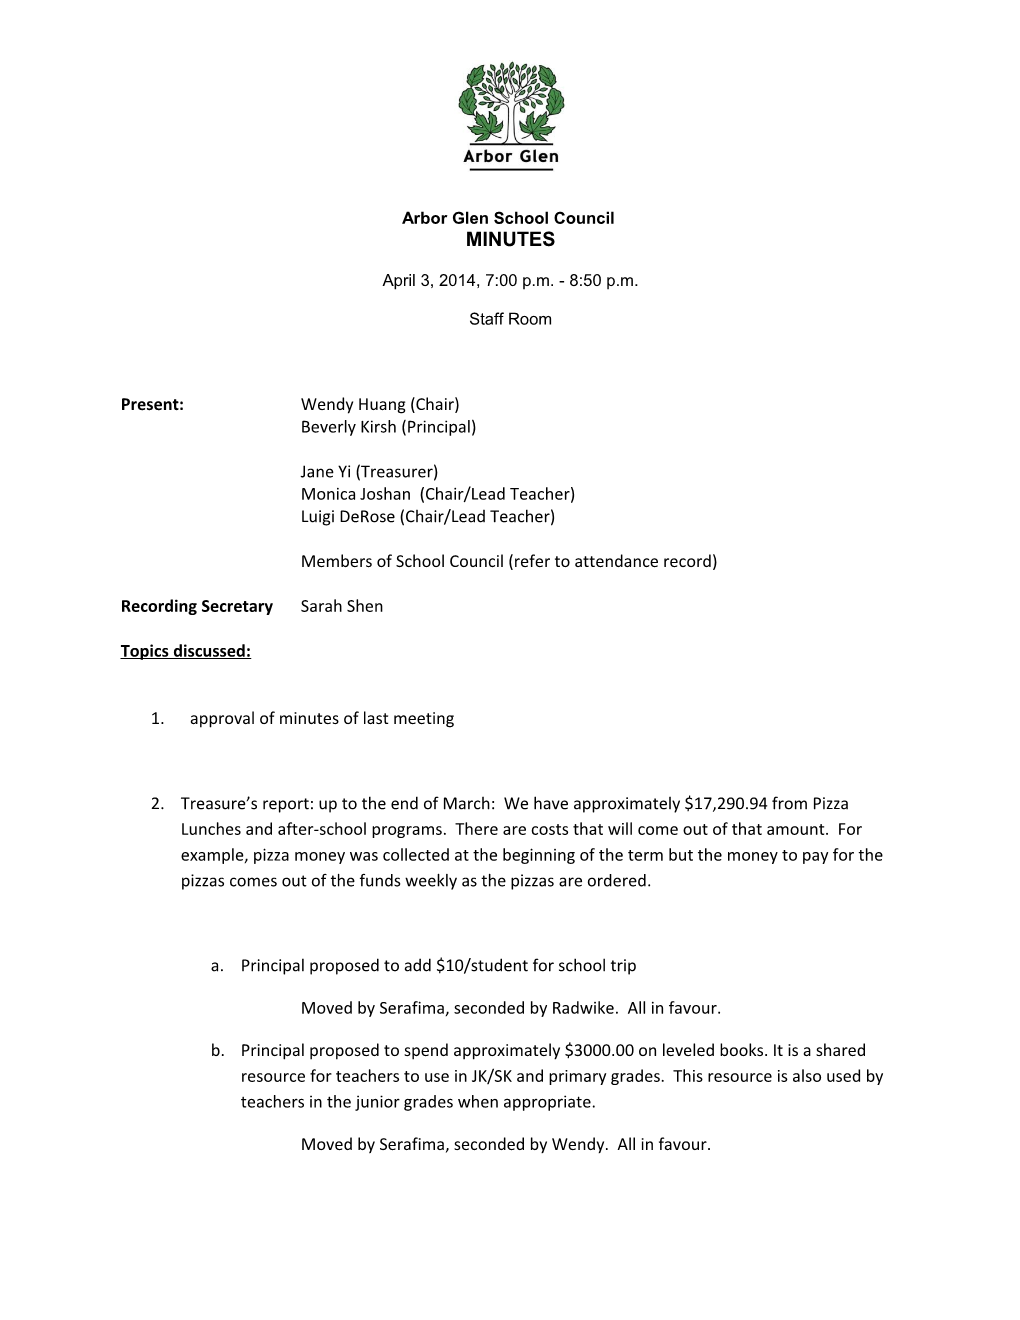 Arbor Glen School Council Meeting Minutes